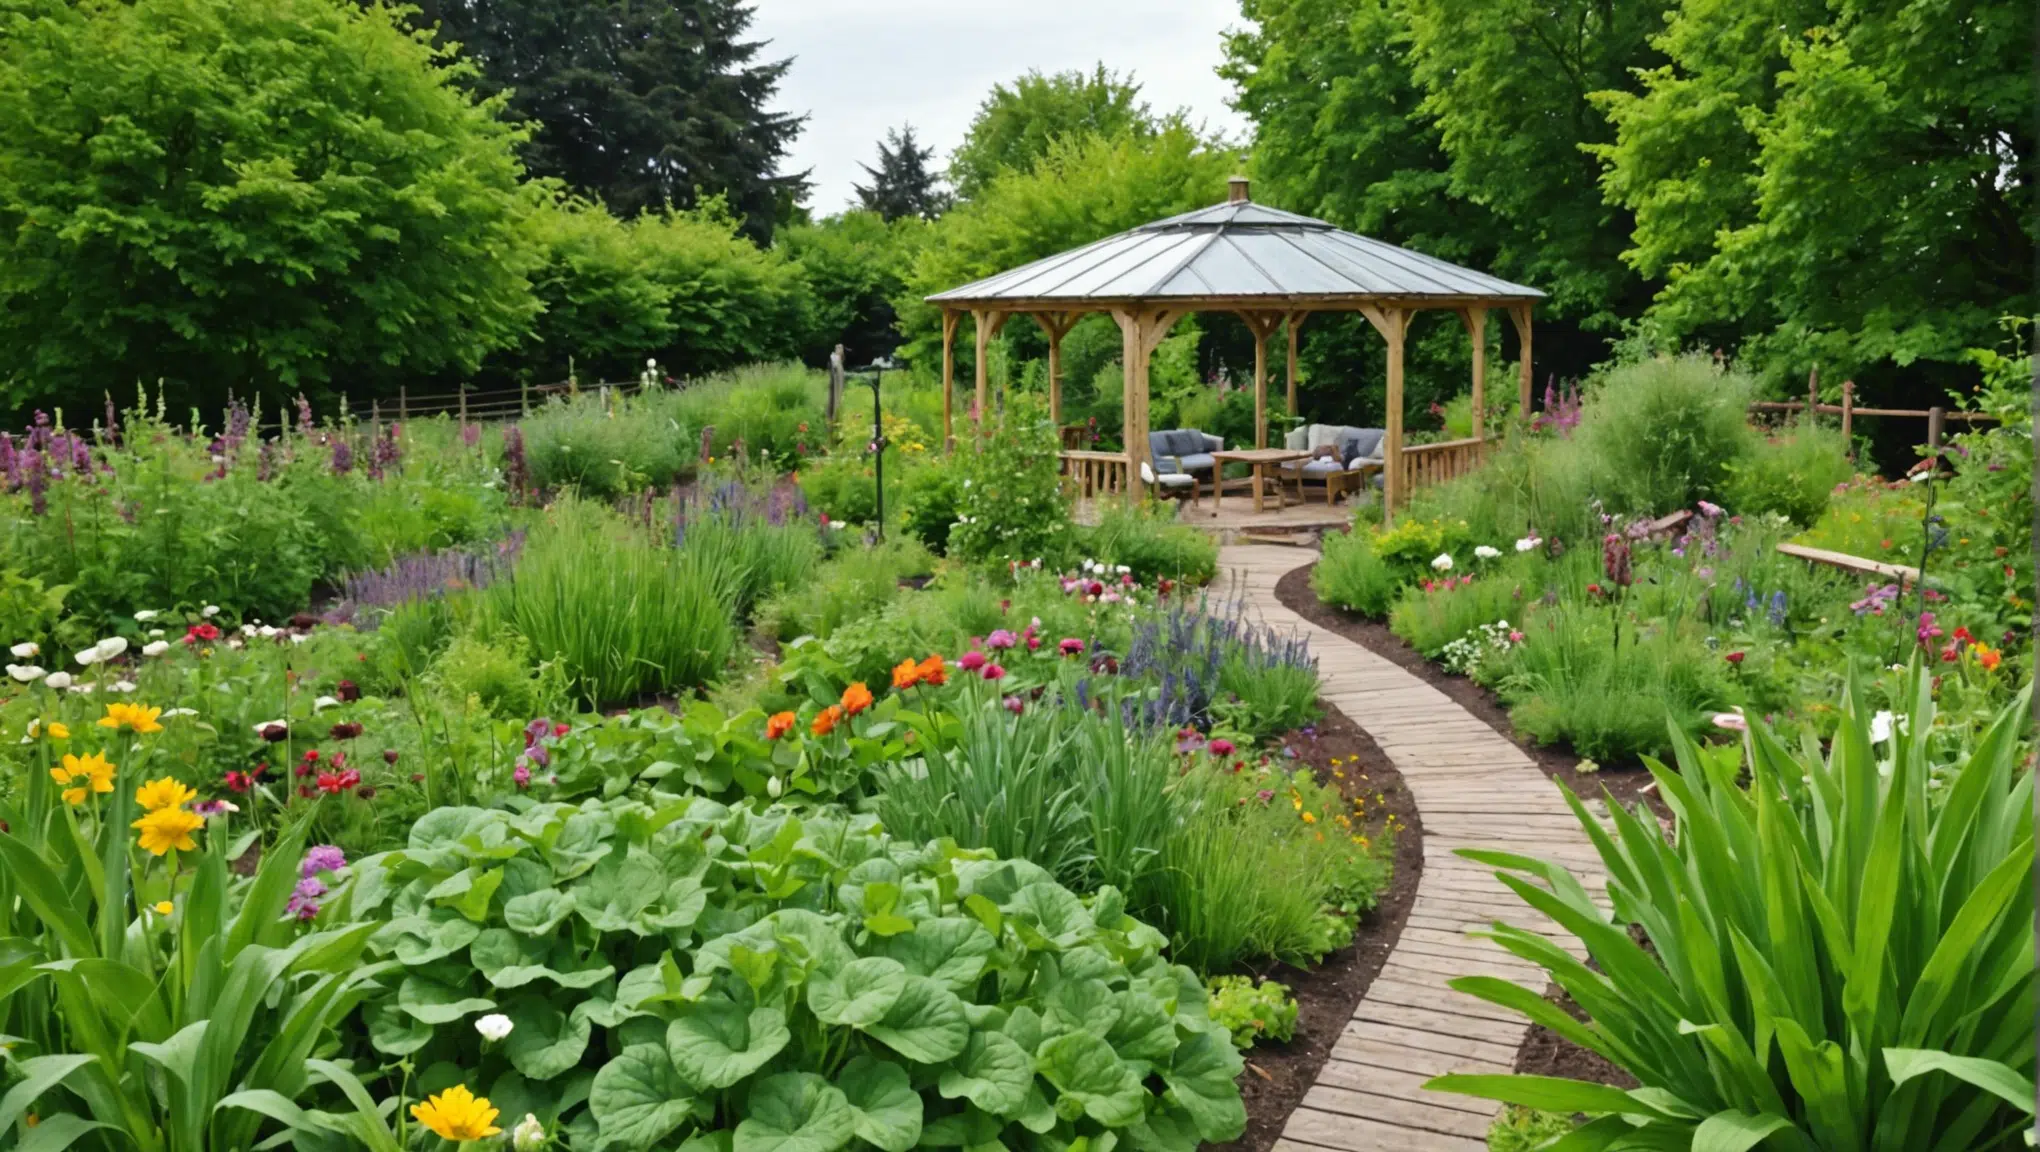 découvrez nos conseils pour cultiver un jardin luxuriant de manière biologique, sans recourir aux pesticides. apprenez à favoriser la biodiversité et à préserver l'équilibre naturel de votre jardin.